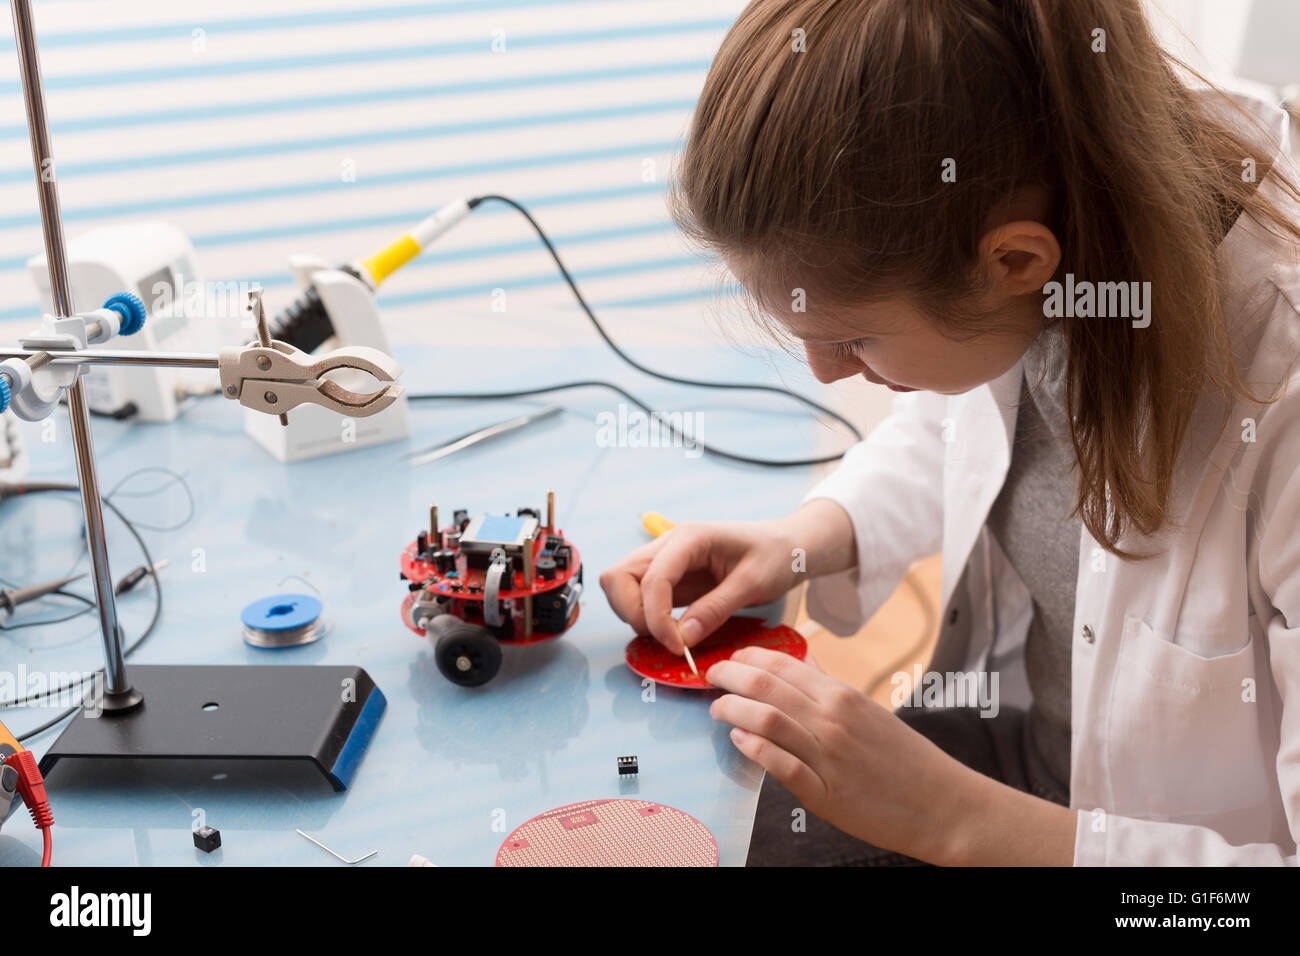 Modello rilasciato. Tecnico femminile lavora con apparecchiature elettriche in laboratorio. Foto Stock